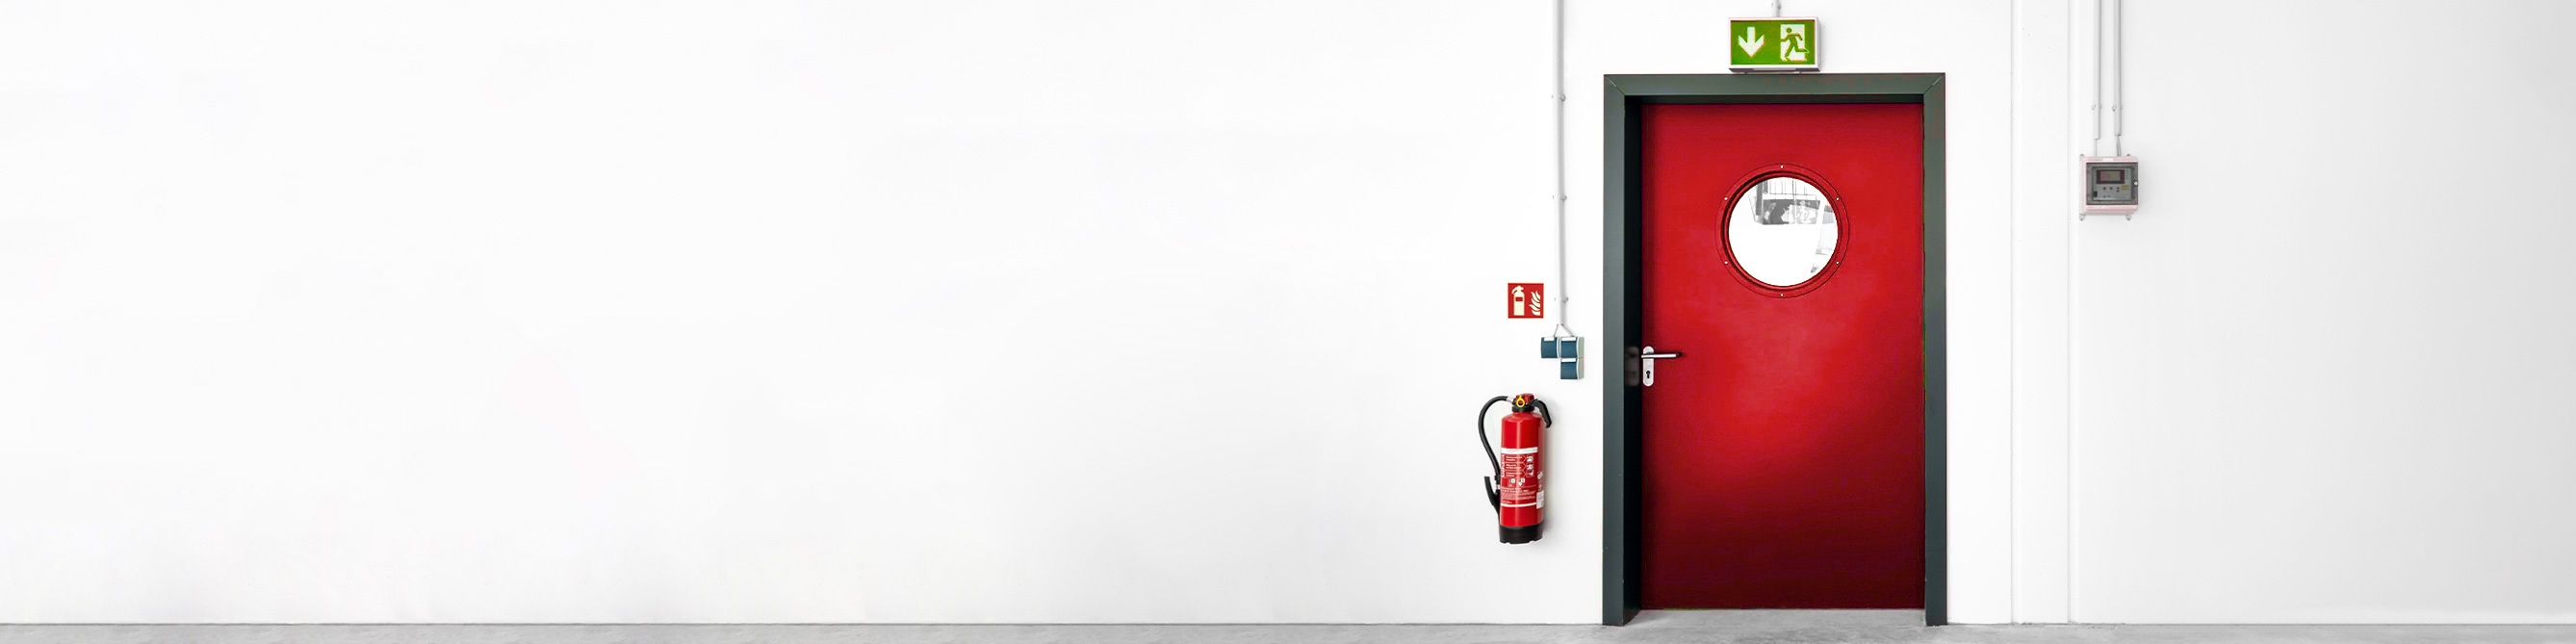 Das Bild zeigt einen an einer Wand befestigten Feuerlöscher neben einer Tür